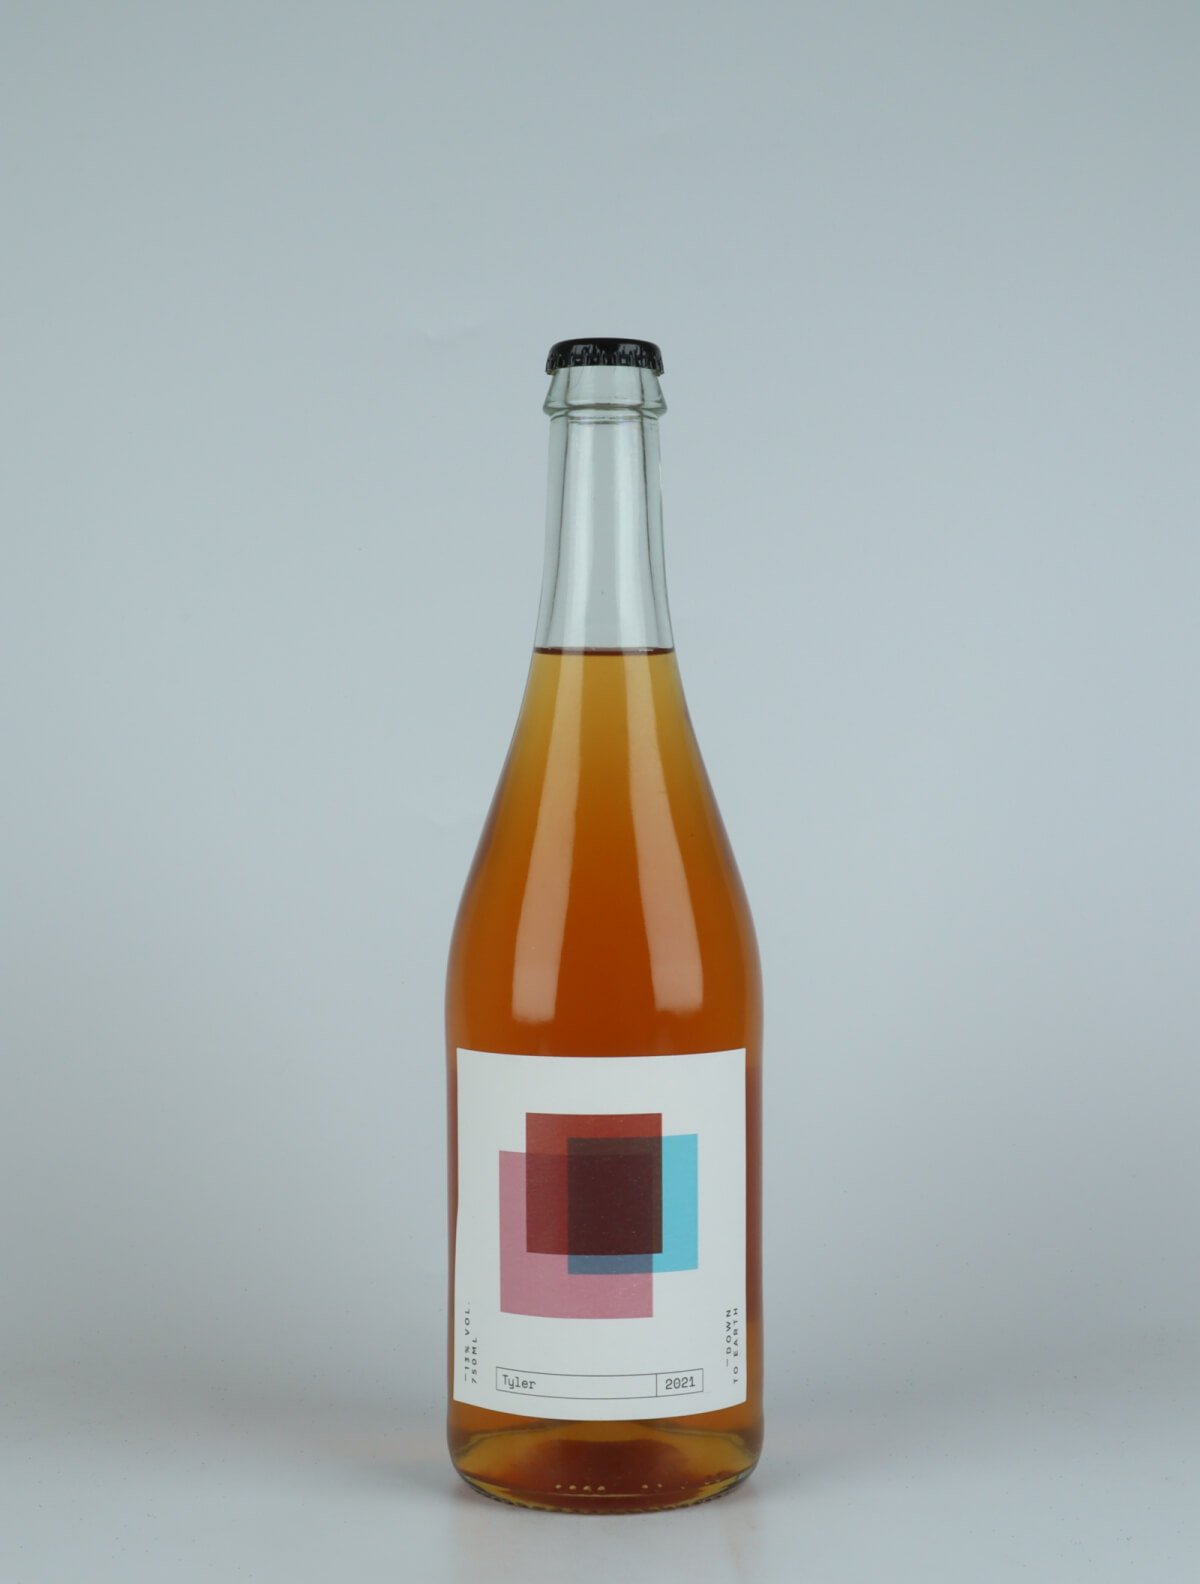 En flaske 2021 Tyler Orange vin fra do.t.e Vini, Toscana i Italien